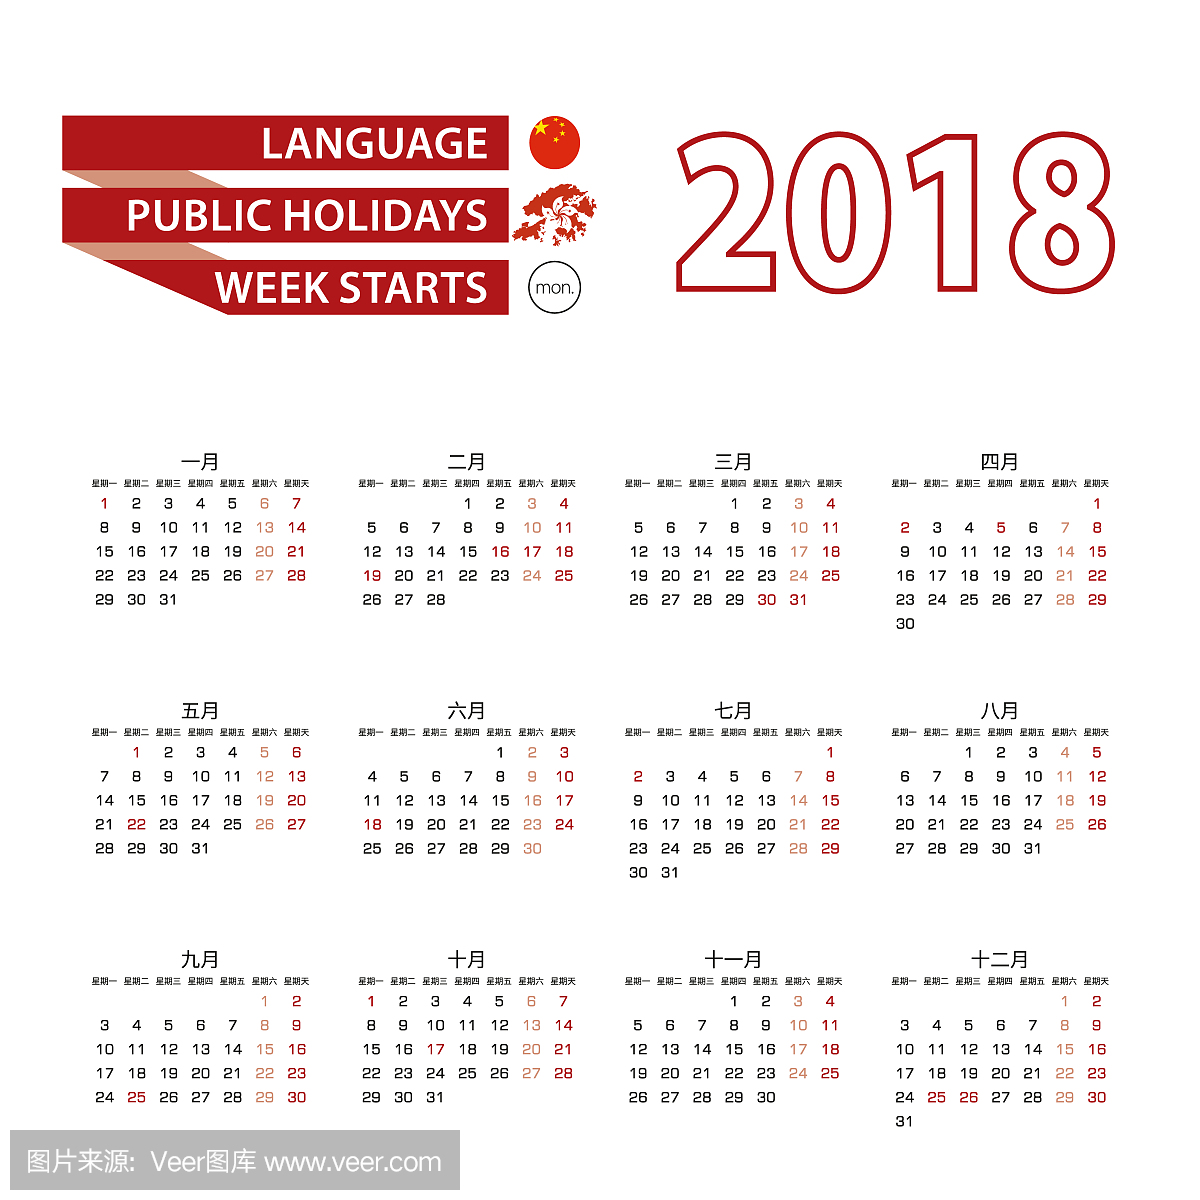 2018年2018年中国语言,公众假期在香港。